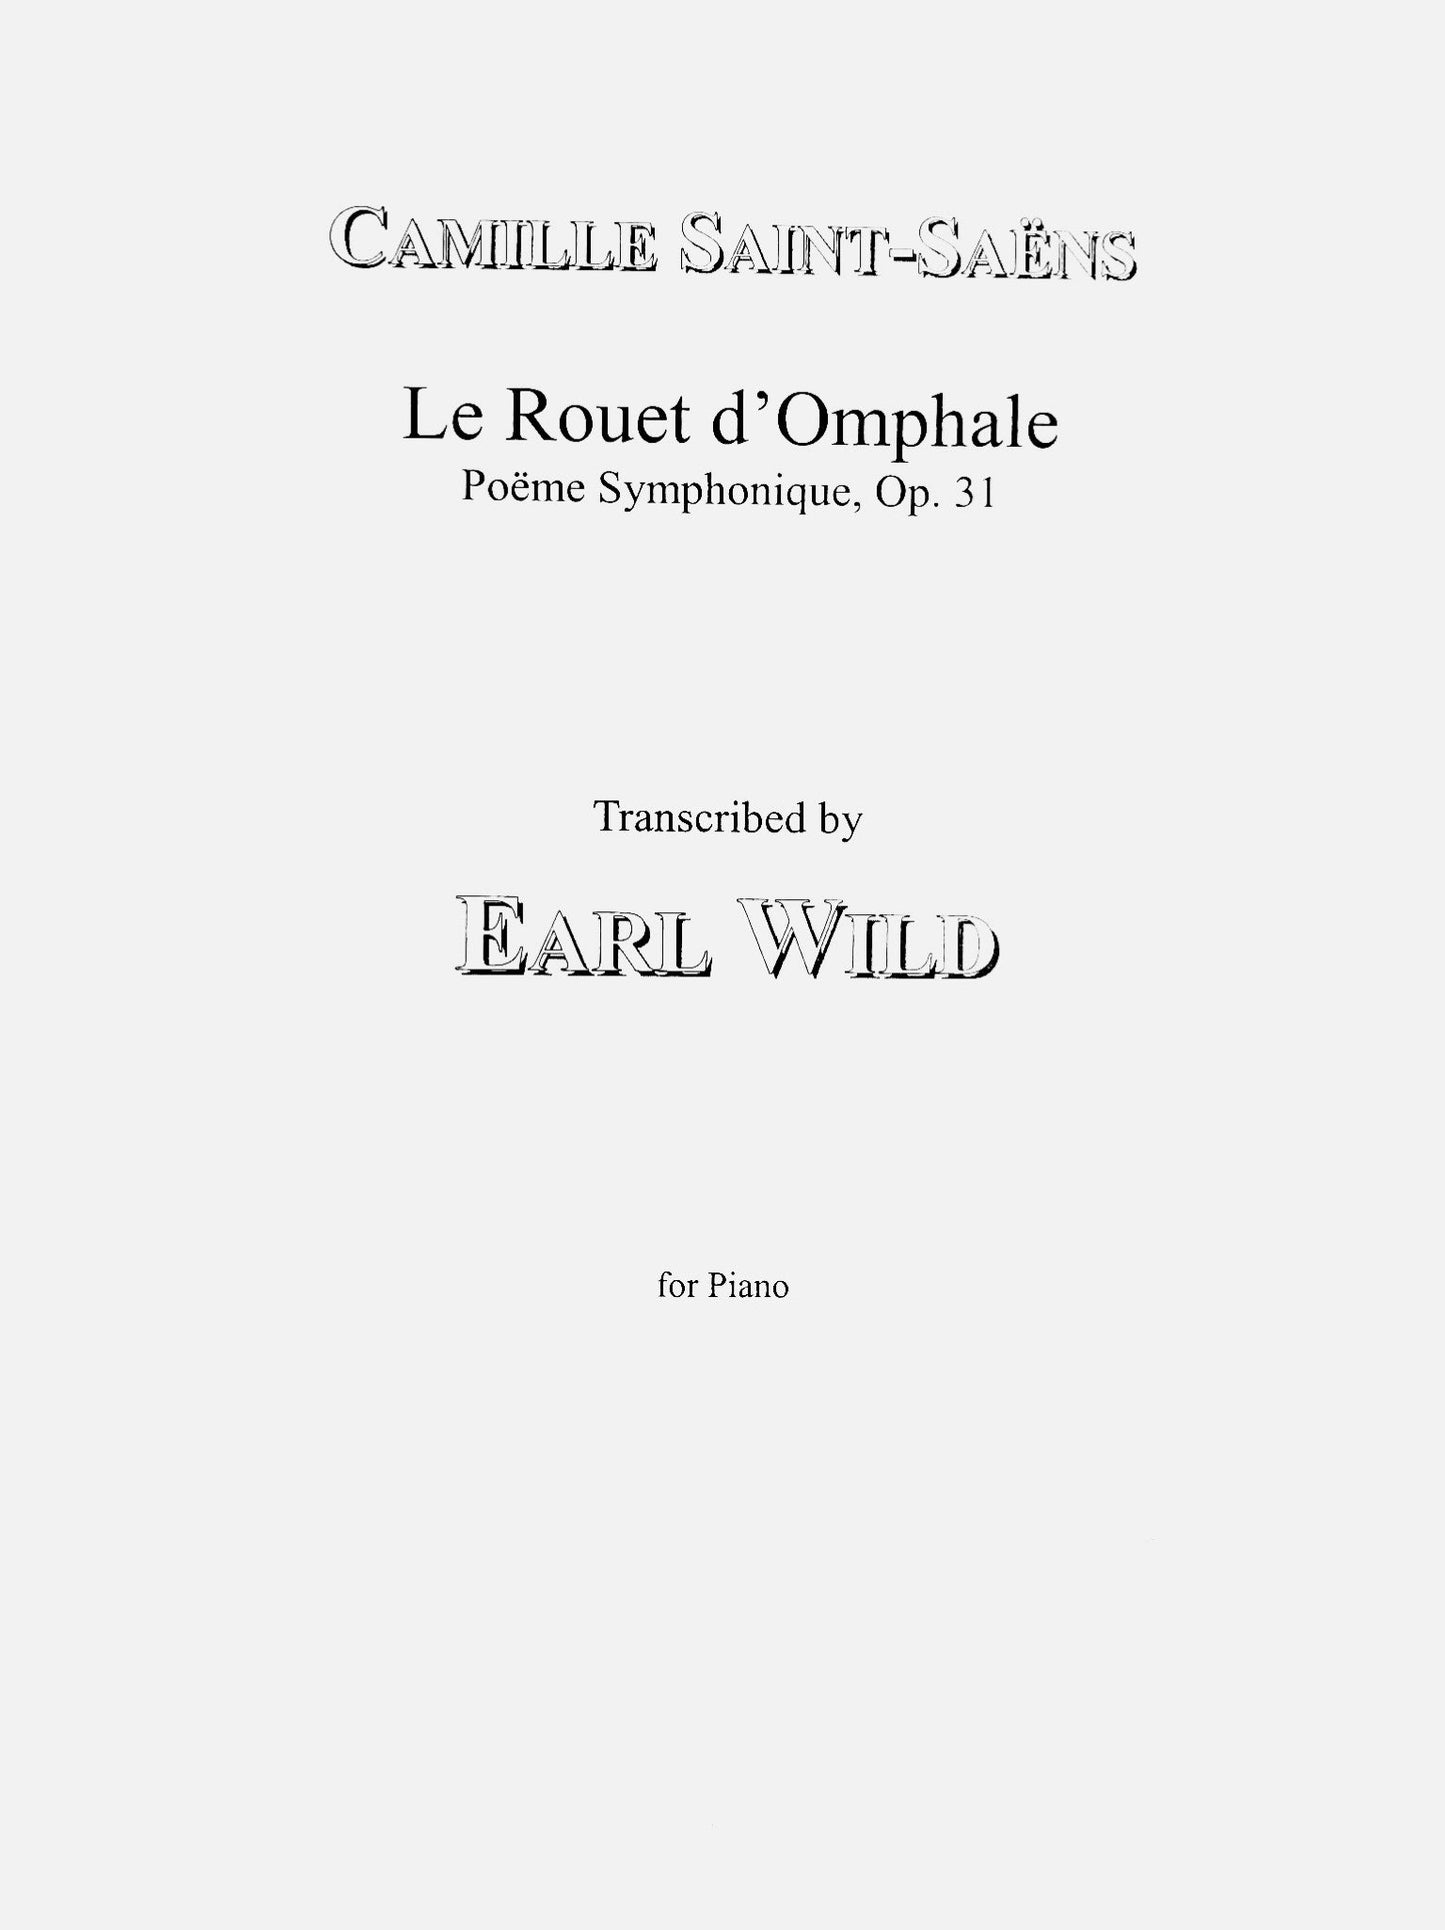 Saint-Saens-Earl Wild: ‘Le Rouet d'Omphale’